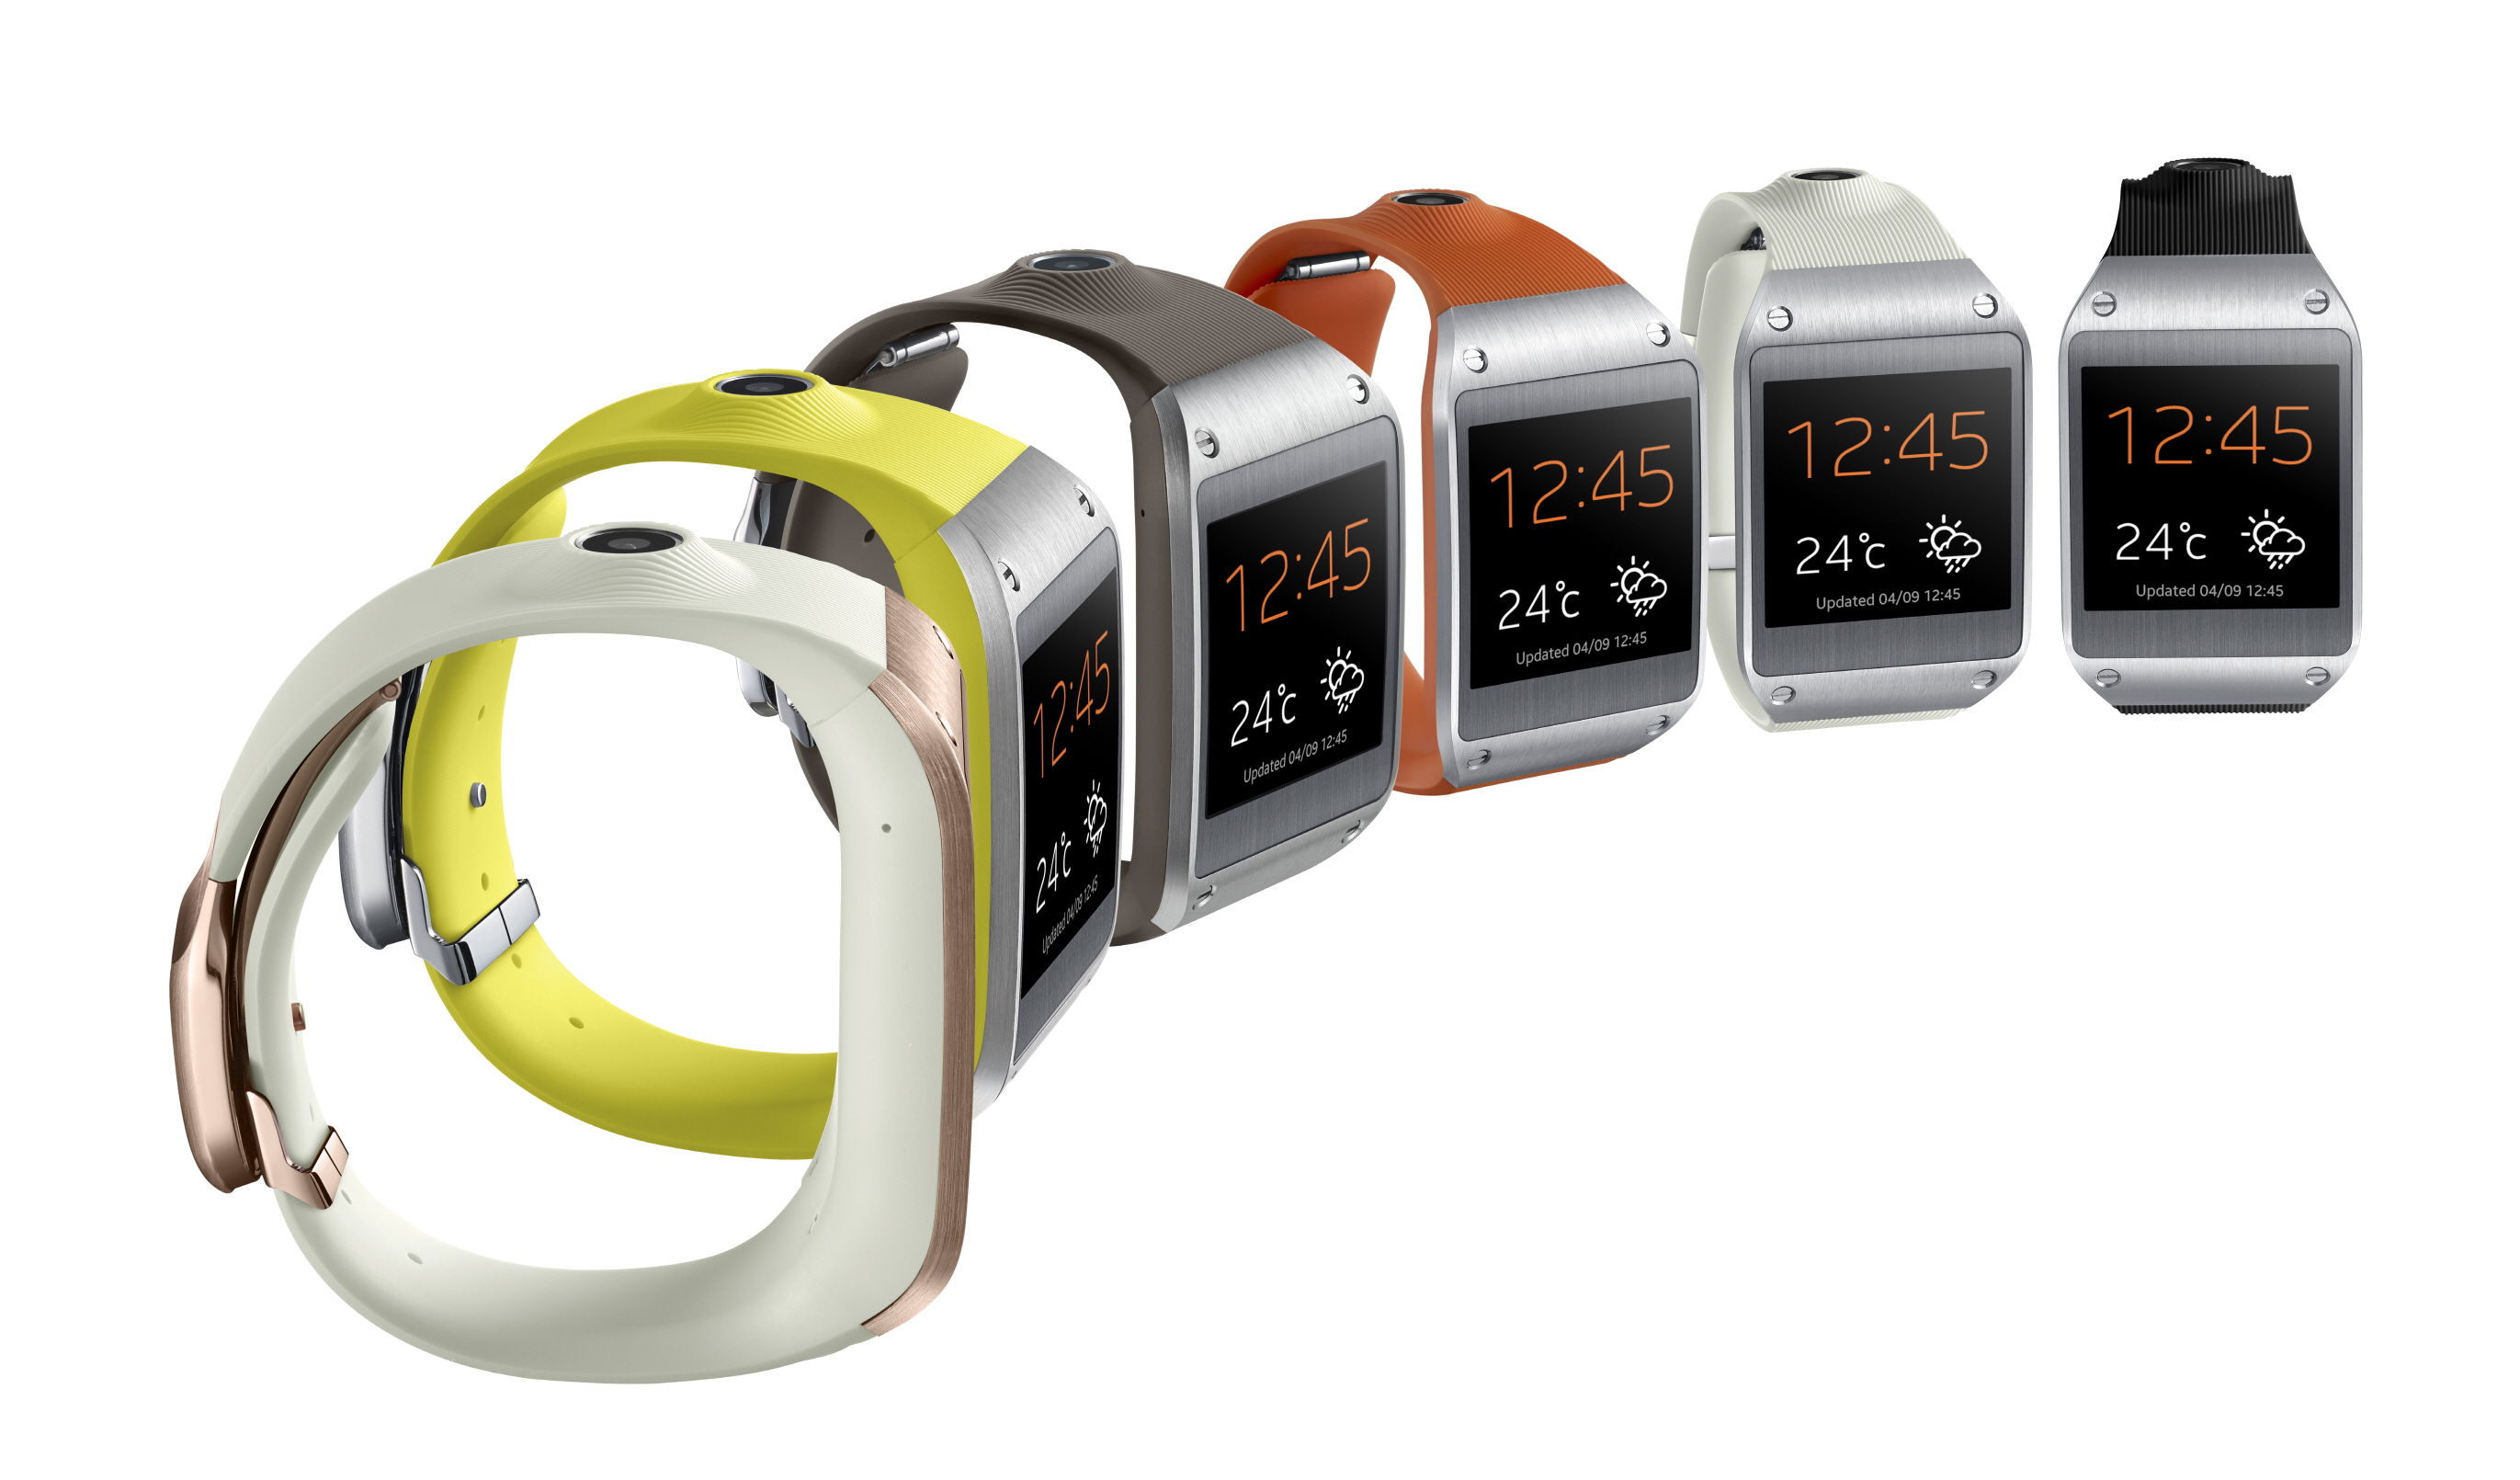 Gear Samsung S2, an Advance Toughest Rival Apple's Watch